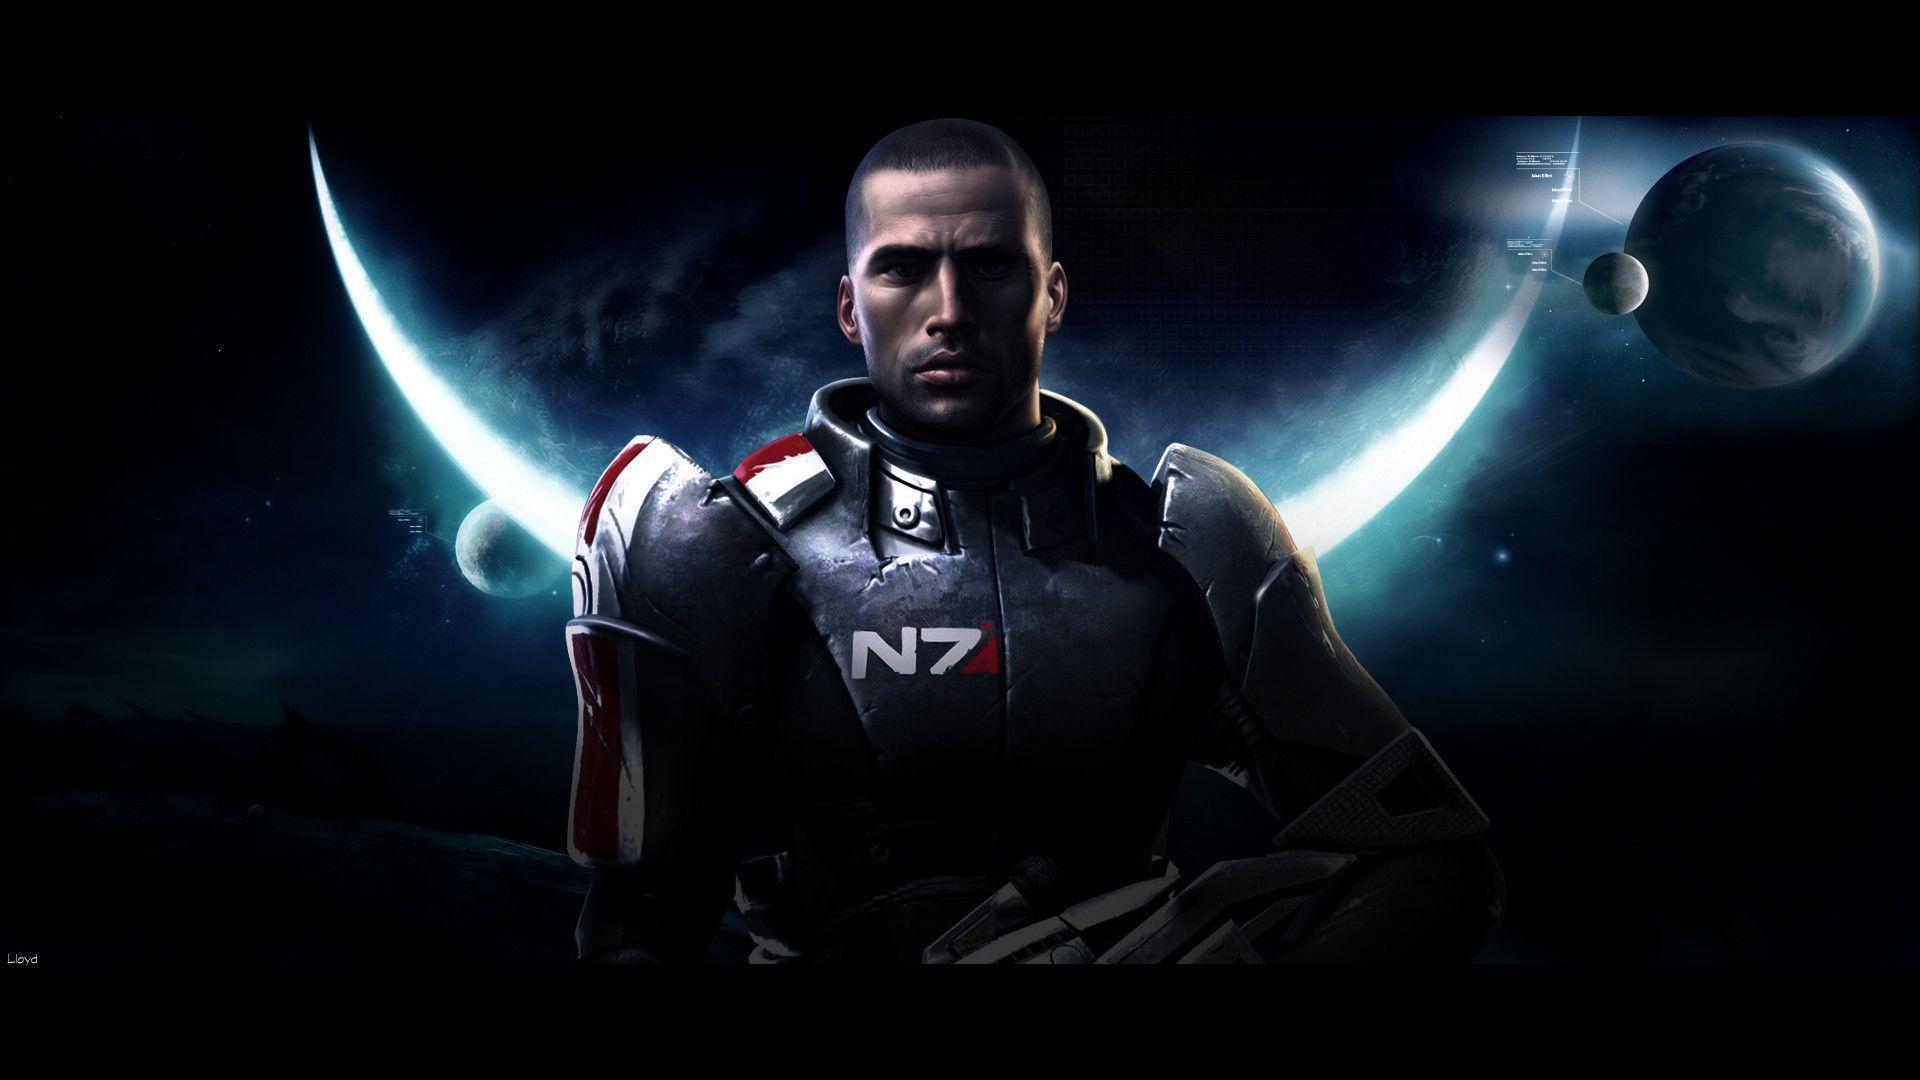 Mass Effect 2 Hd Wallpaper 4k For Pc